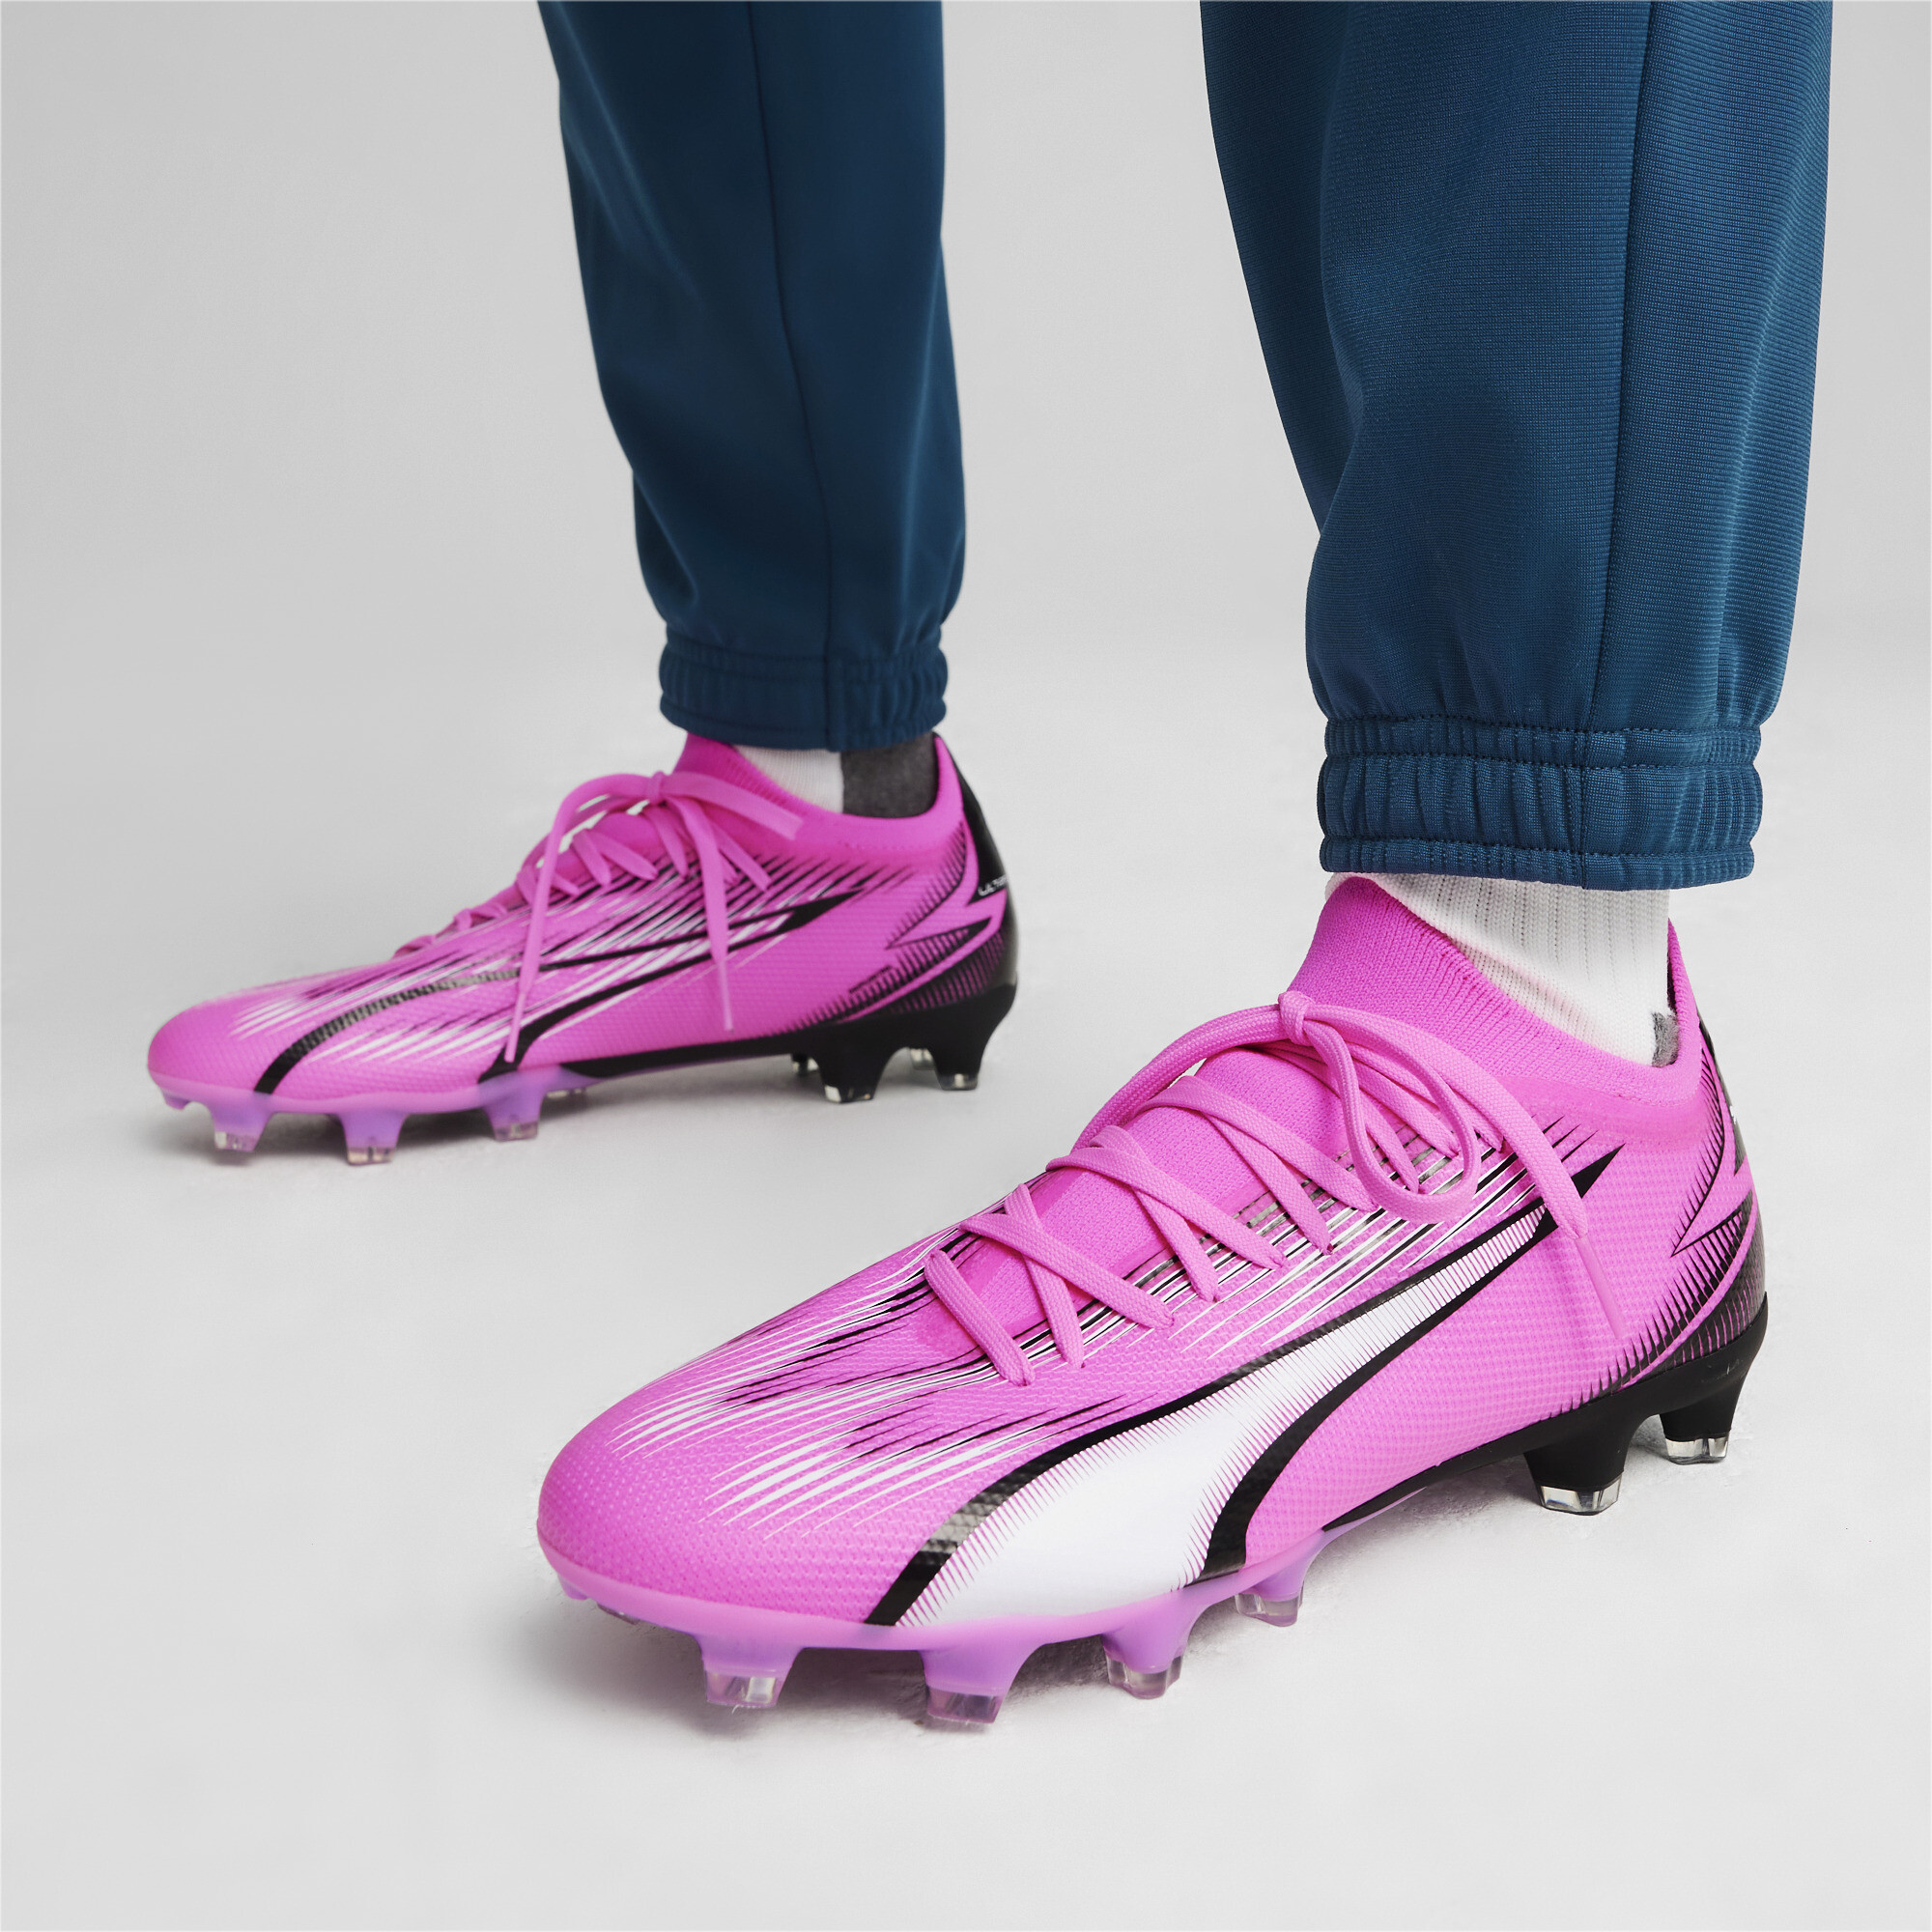 Women's PUMA ULTRA MATCH FG/AG Football Boots In Pink, Size EU 36